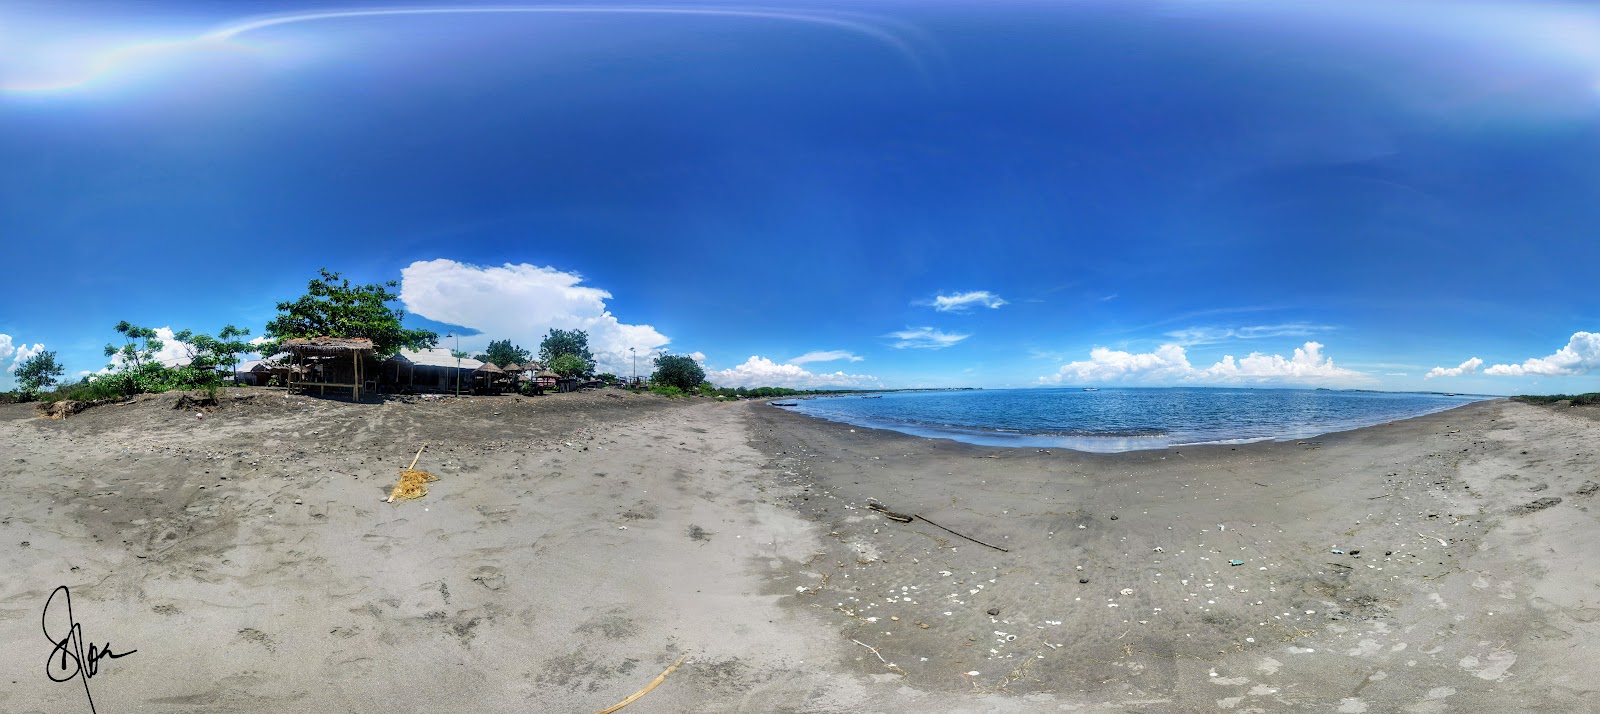 Fotografie cu Muara Lungkak Beach cu o suprafață de nisip maro